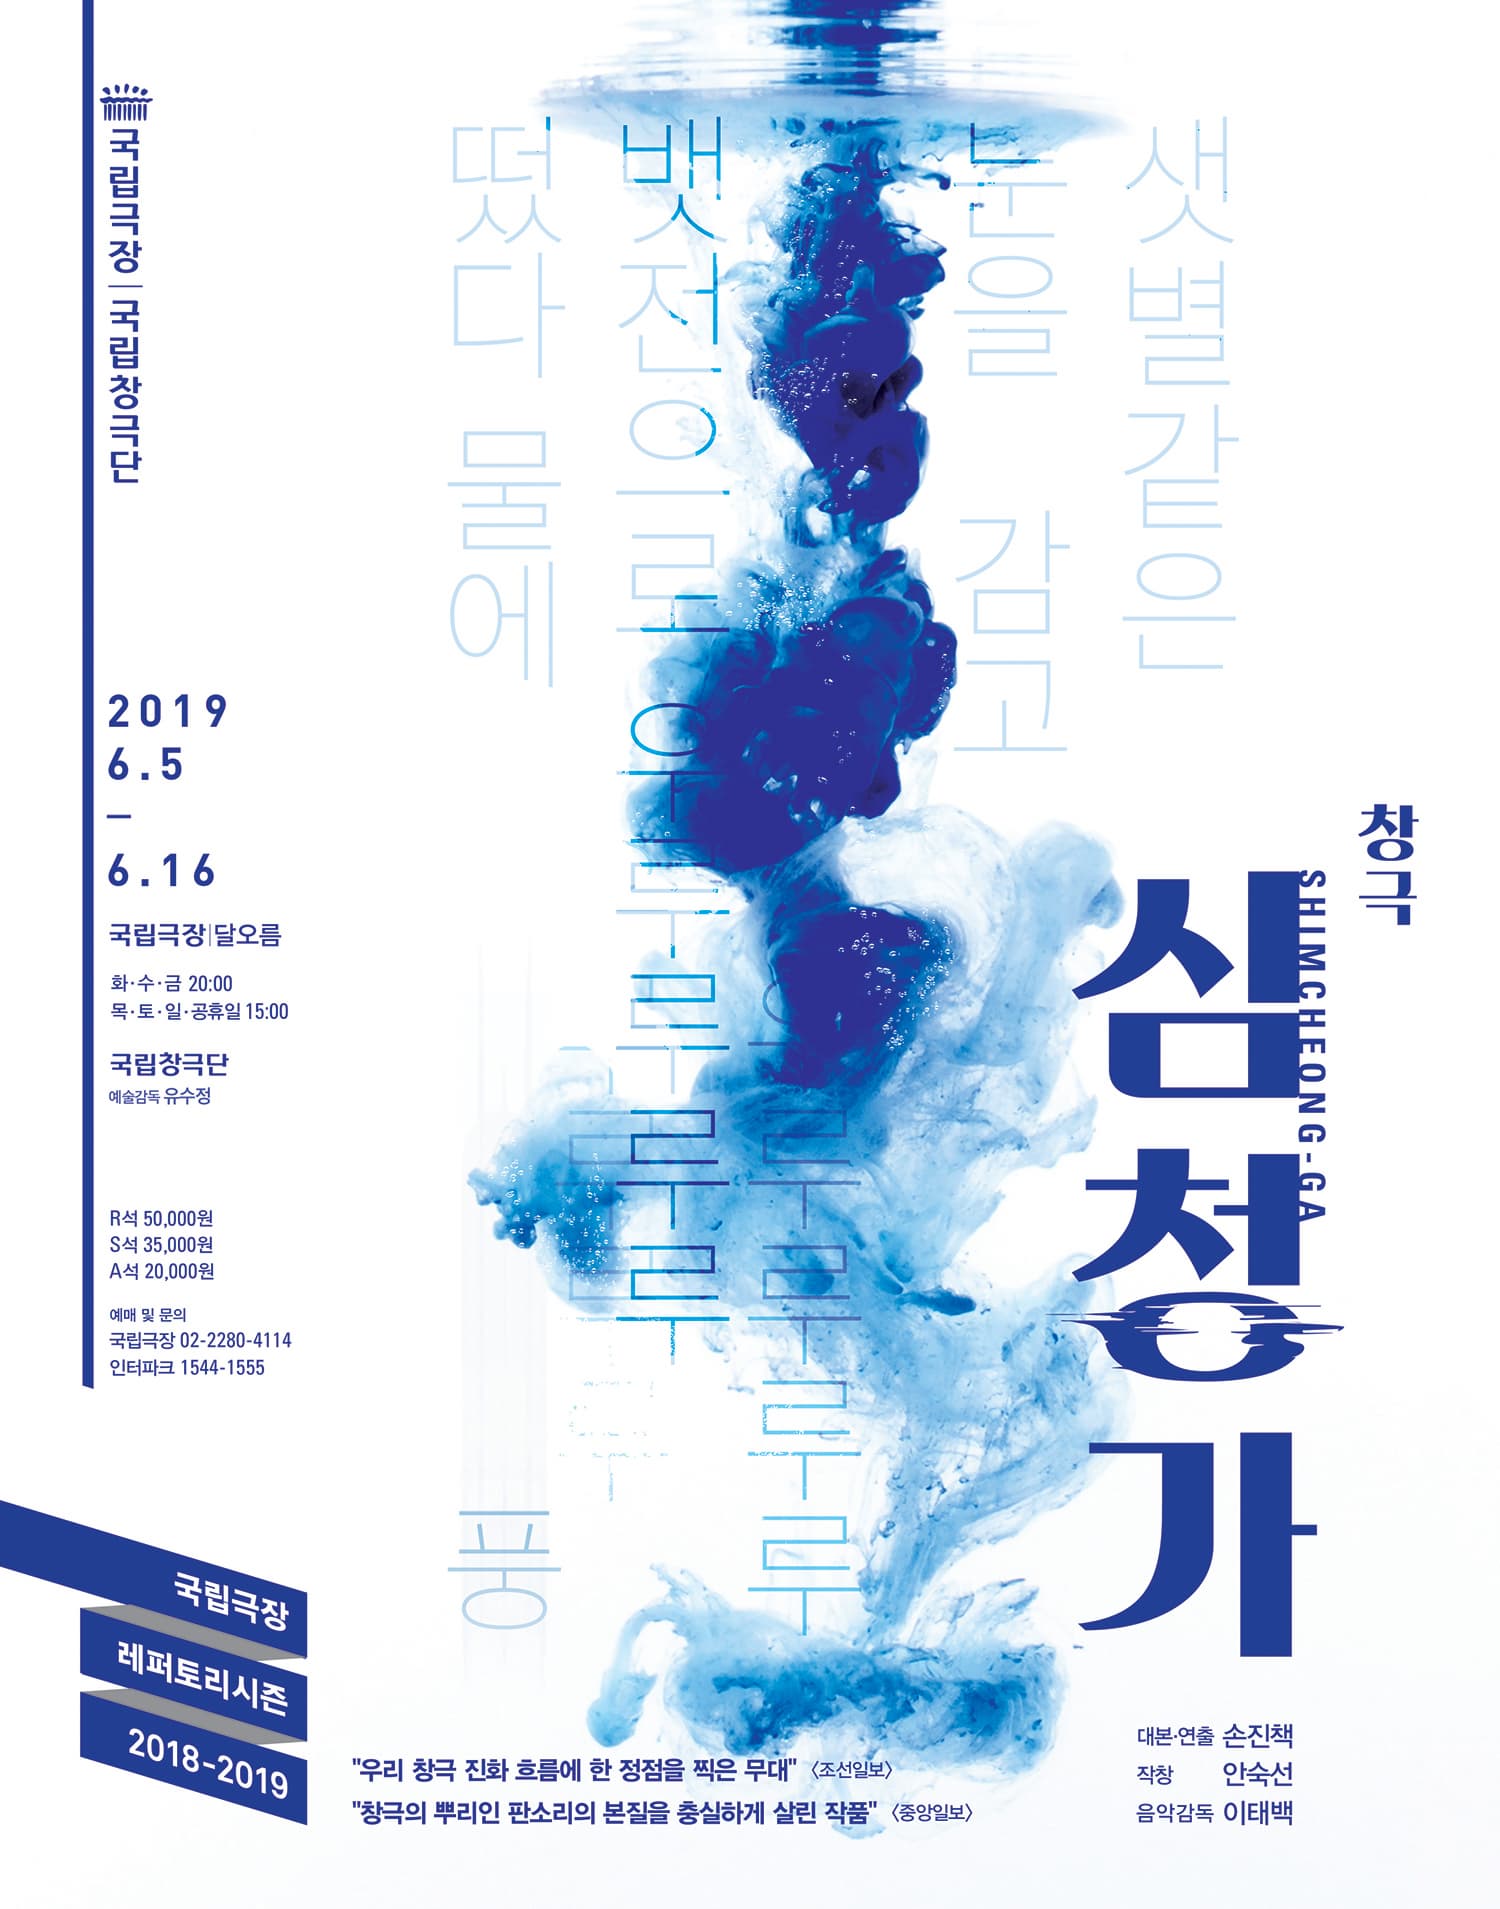 심청의 지극한 효심과 심학규의 절절한 한이 소리를 만나 예술로 승화된 아름다운 한국식 오페라